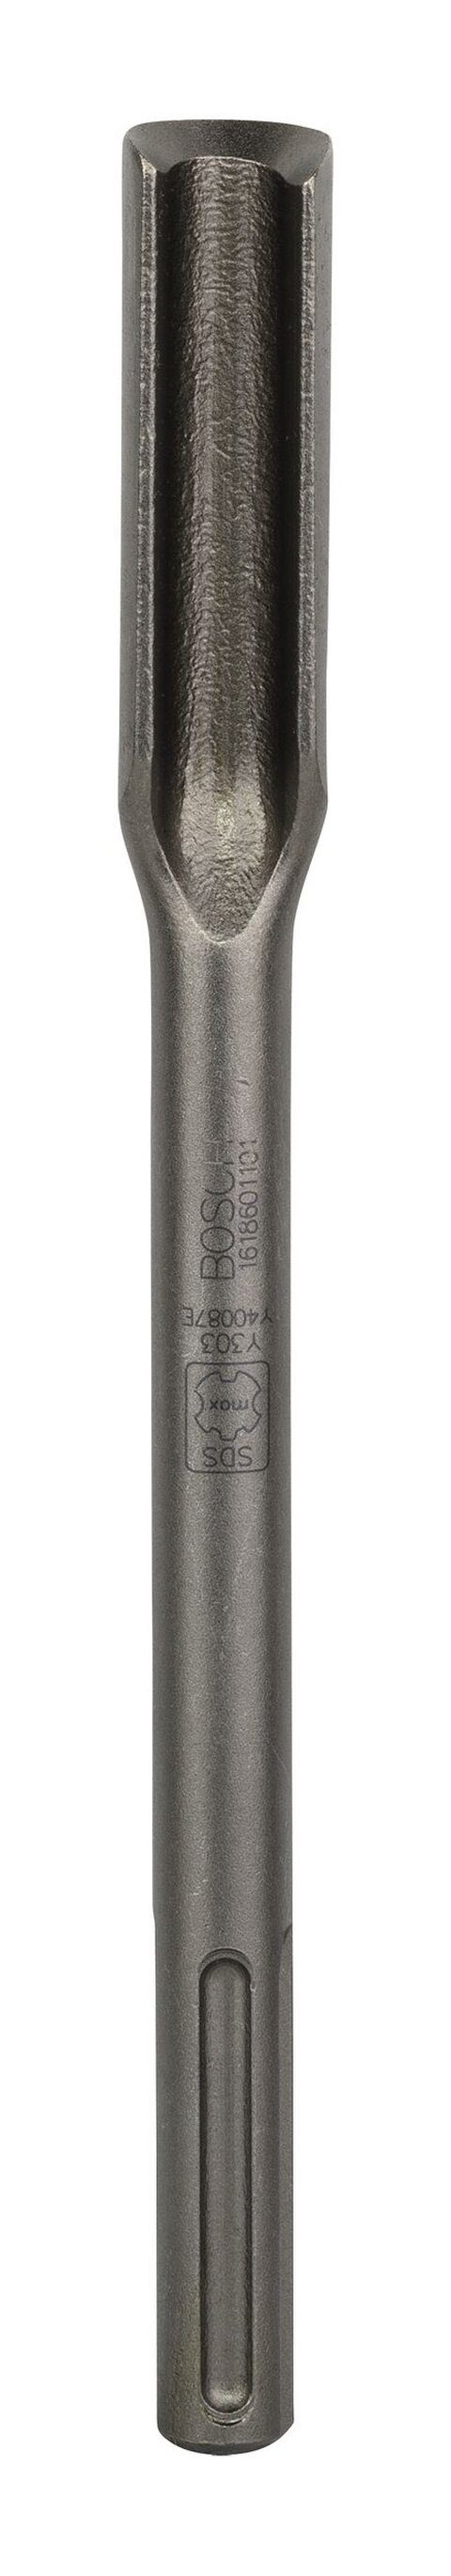 BOSCH Universalbohrer, Hohlmeißel mit SDS max-Aufnahme - 300 x 26 mm